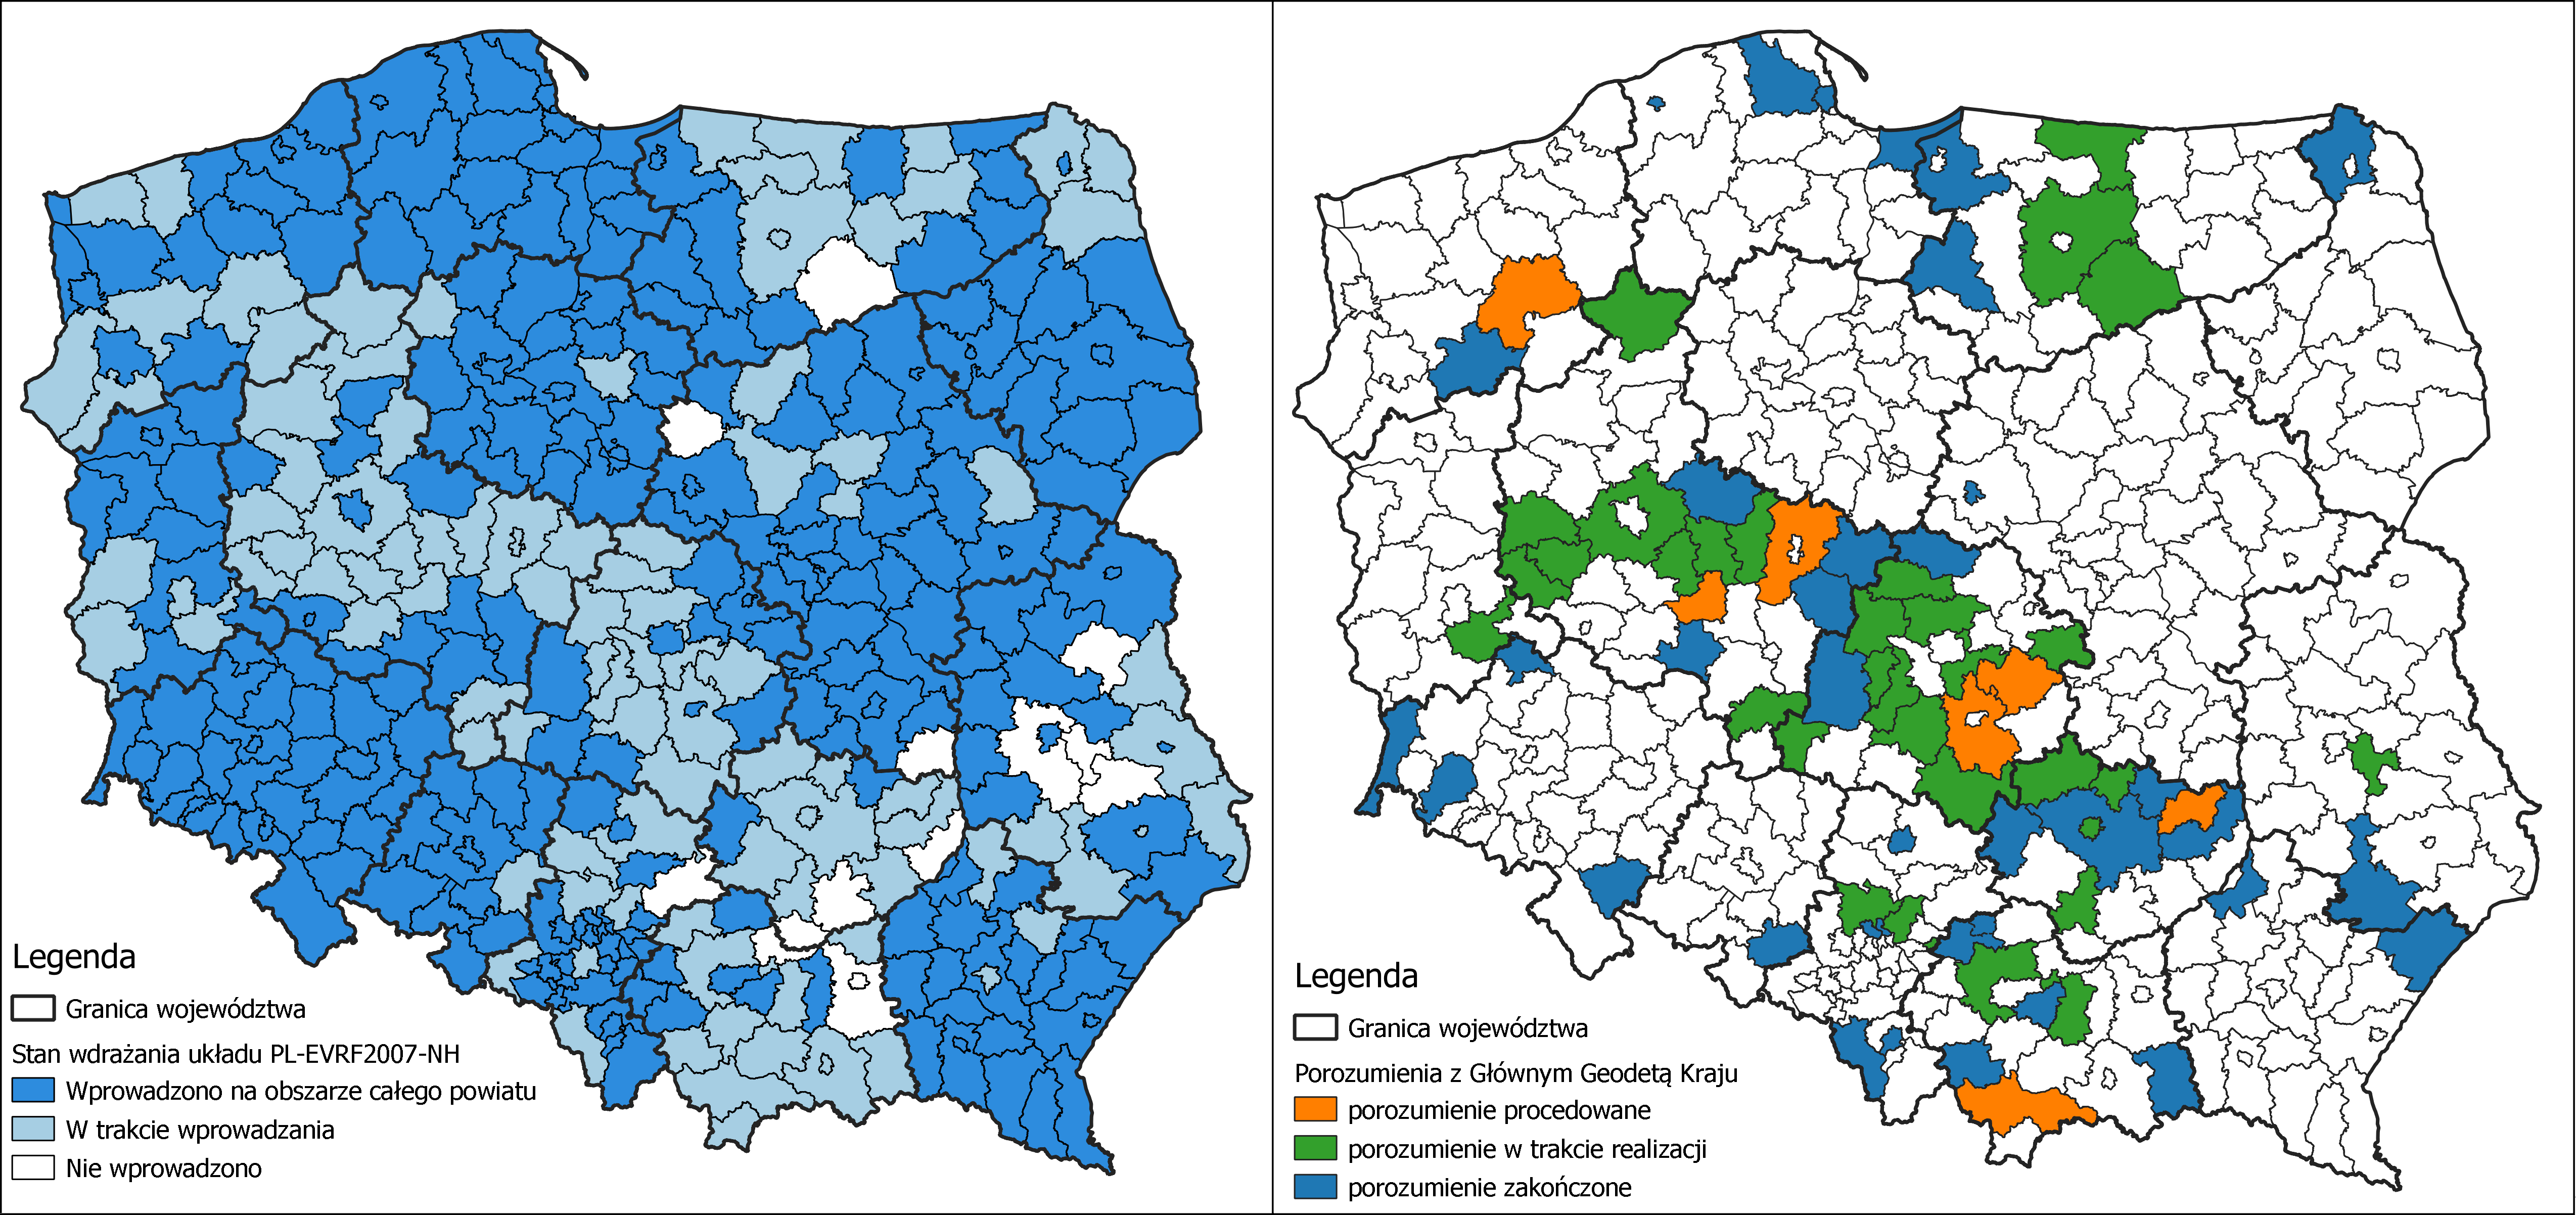 Ilustracja przedstawia zetawione obok siebie 2 mapy Polski z oznaczonymi kolorystycznie: stanem wdrażania układu PL-EVRF2007-NH w powiatach po lewej stronie i powiatami, z którymi zawarte zostało porozumienie po prawej stronie.